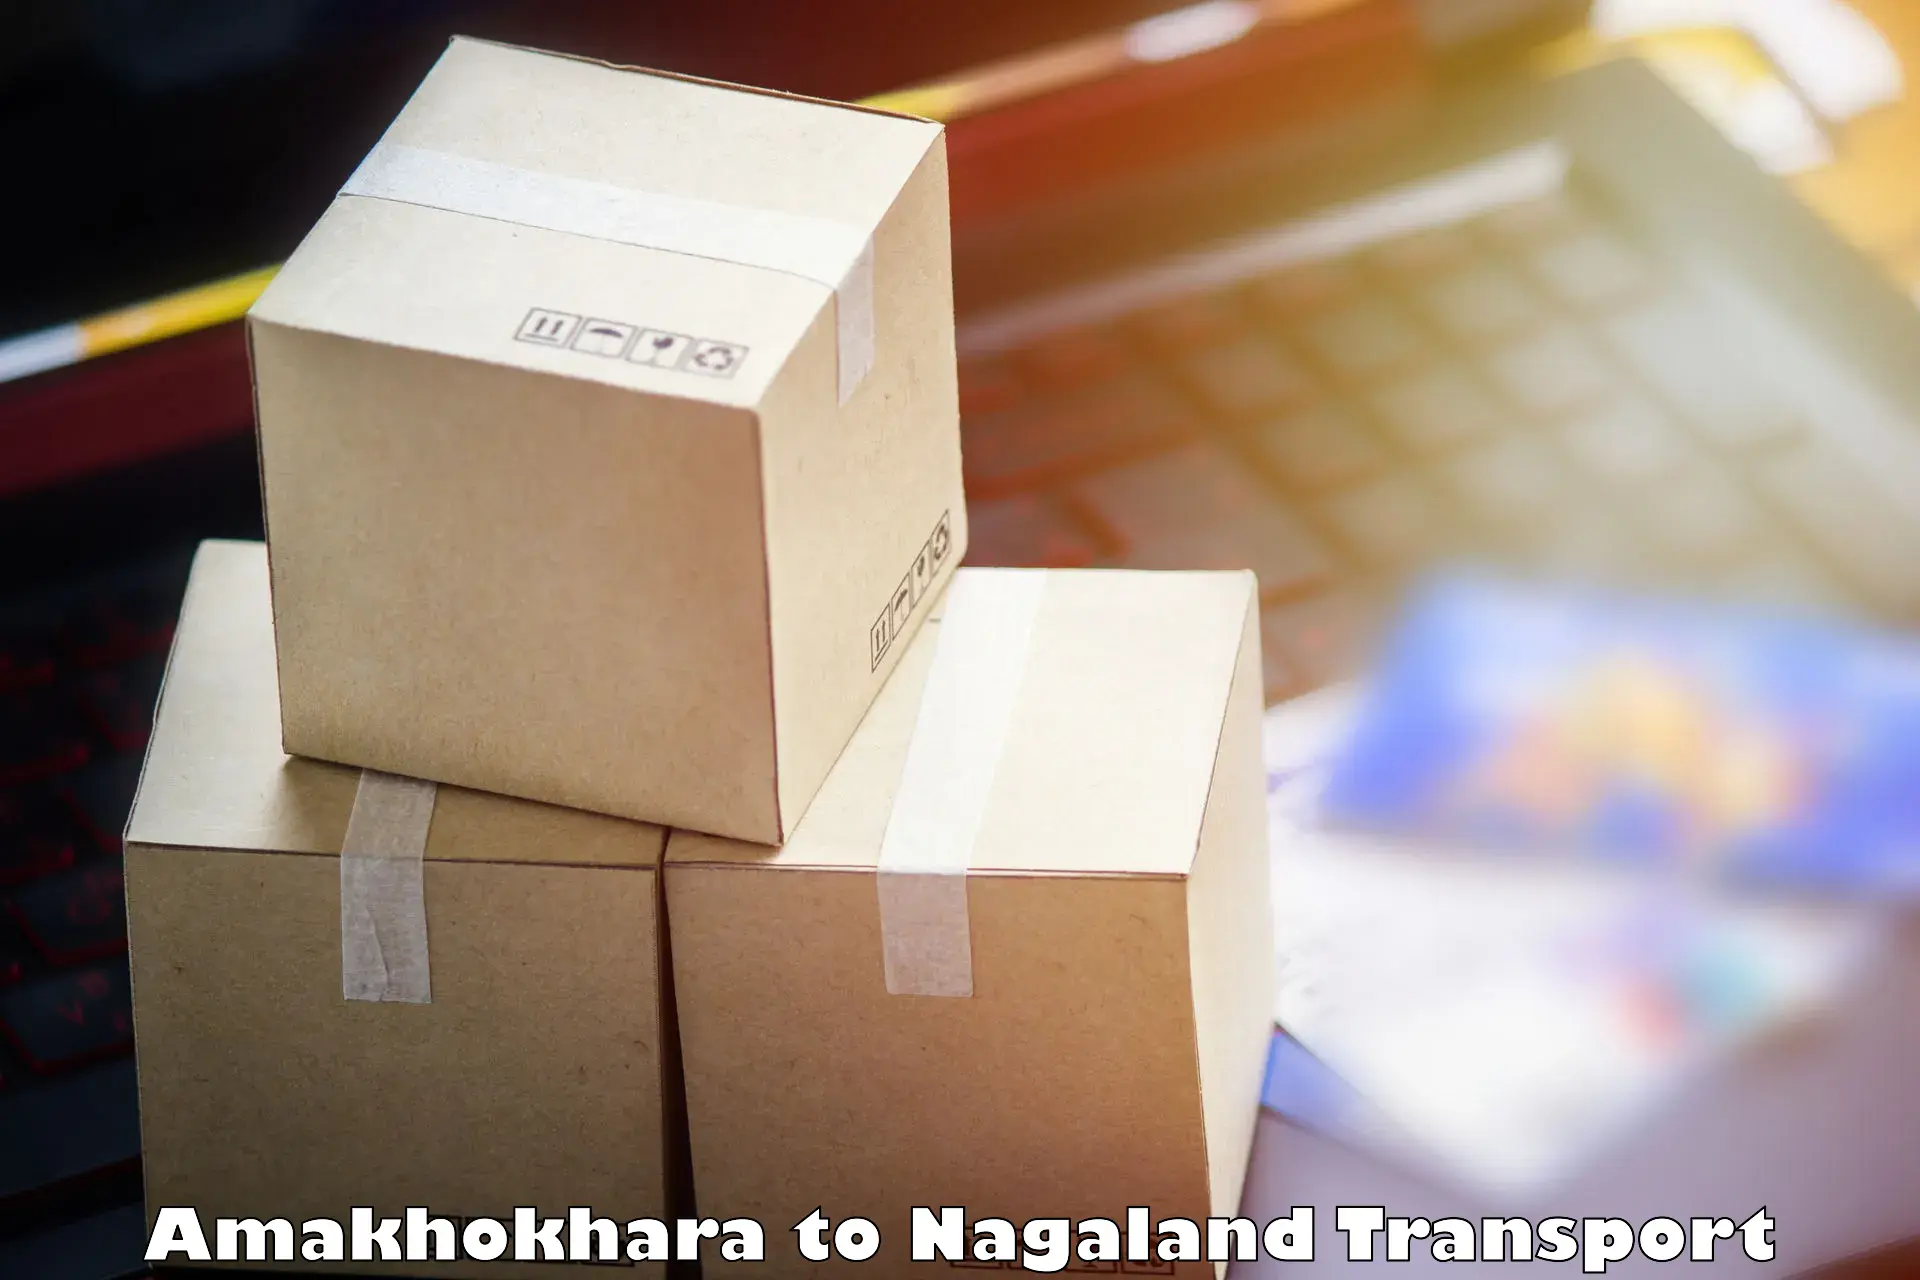 Cargo transportation services Amakhokhara to NIT Nagaland